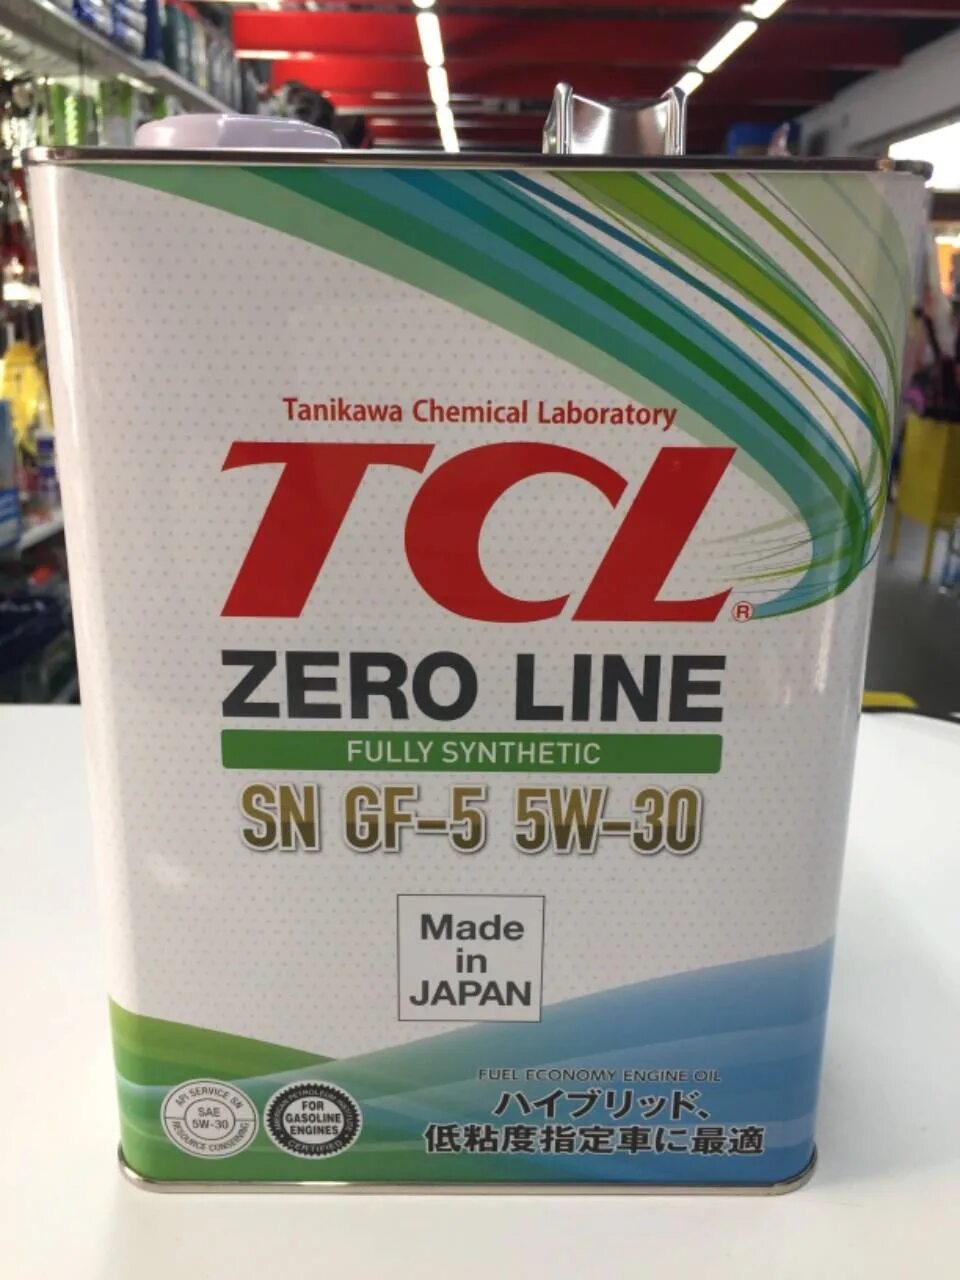 TCL Zero line 5w30. TCL Zero line 5w-20. TCL SN gf-5 5w-30. TCL 5w30 SP.